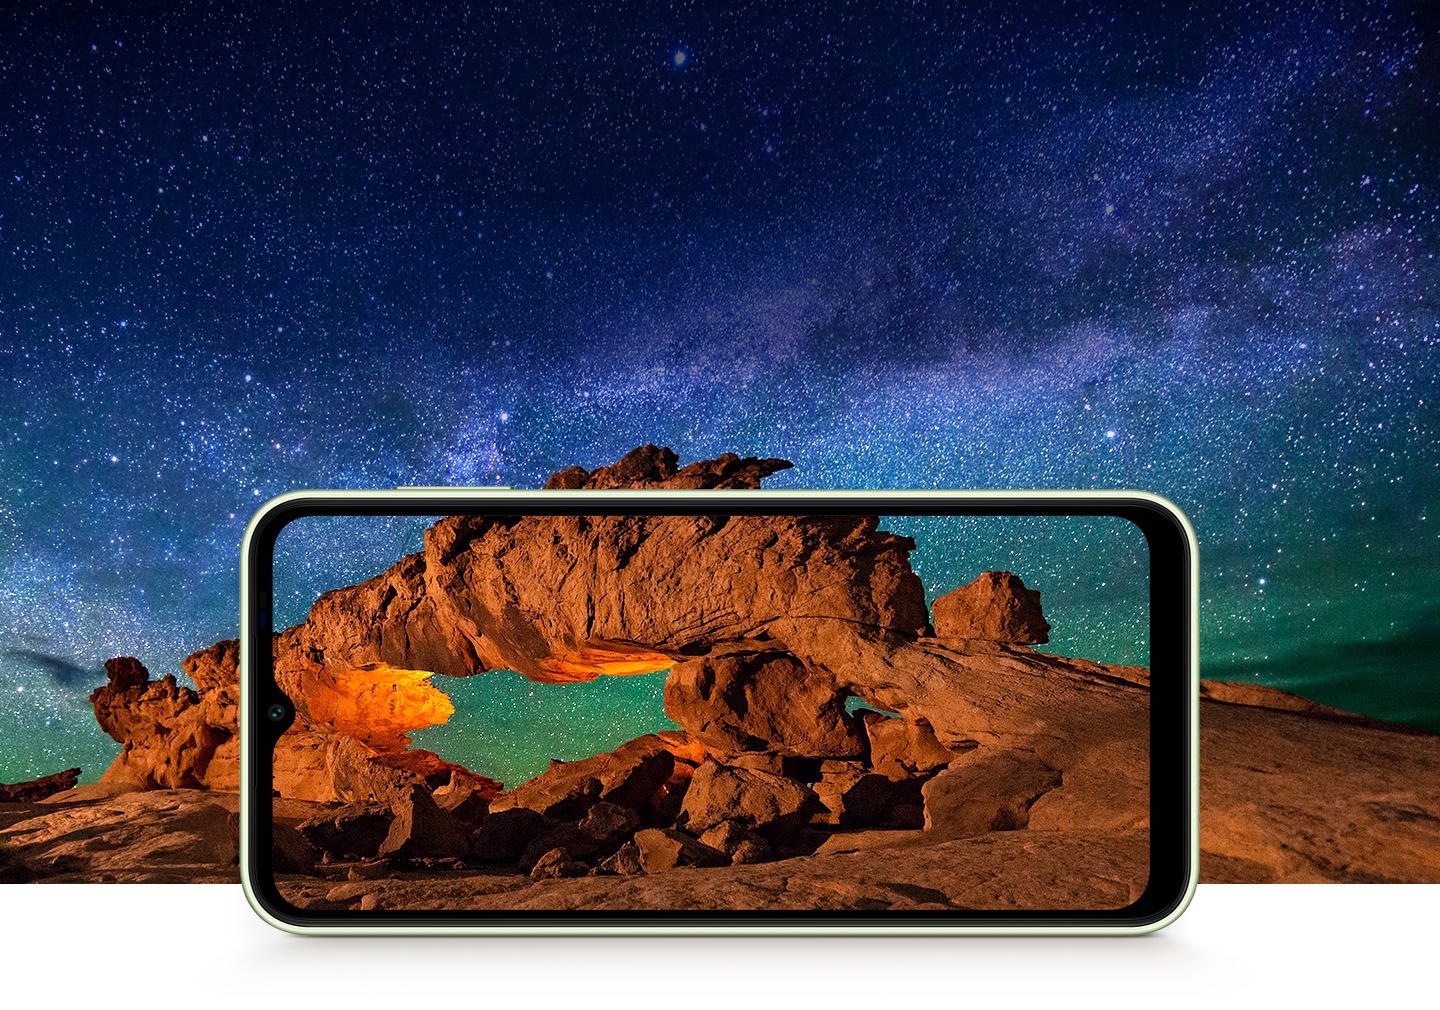 'L'immagine mostra maestose formazioni rocciose di colore arancio-marrone sotto un cielo stellato su un Galaxy A14 5G in modalità paesaggio. L'immagine si allarga oltre lo schermo del dispositivo, mettendo in evidenza l'esperienza immersiva prodotta dal display.